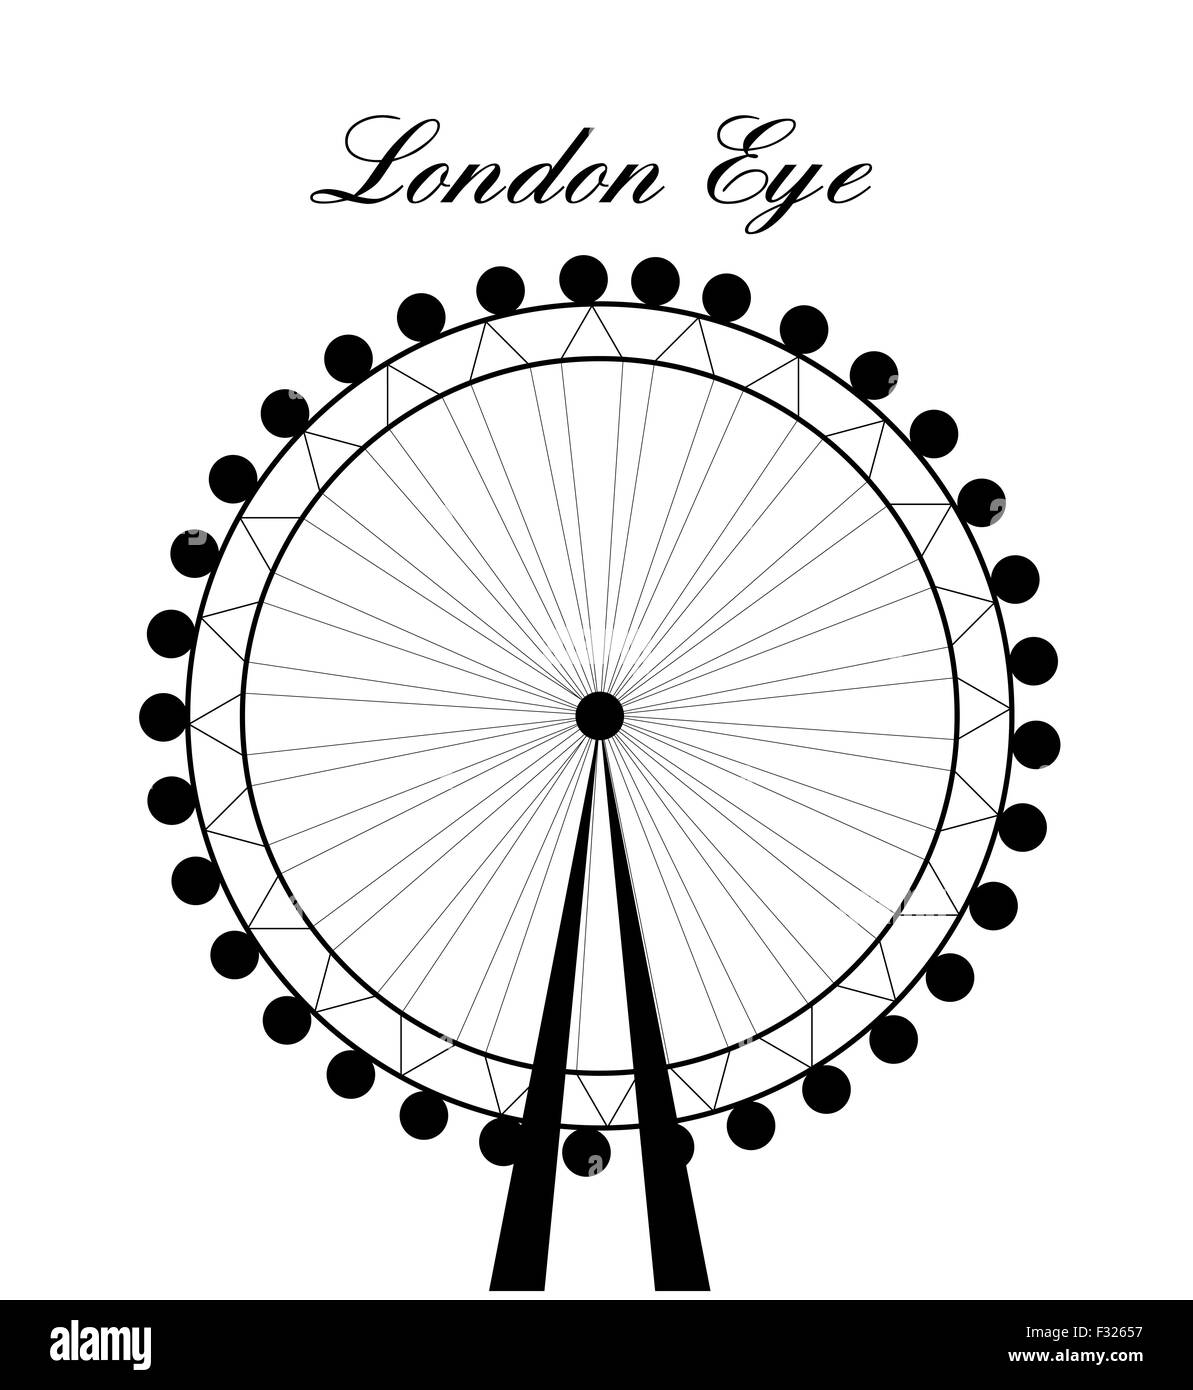 Bild von Cartoon London Eye Silhouette mit Zeichen. Vektor-Illustration isoliert auf weißem Hintergrund. Stockfoto